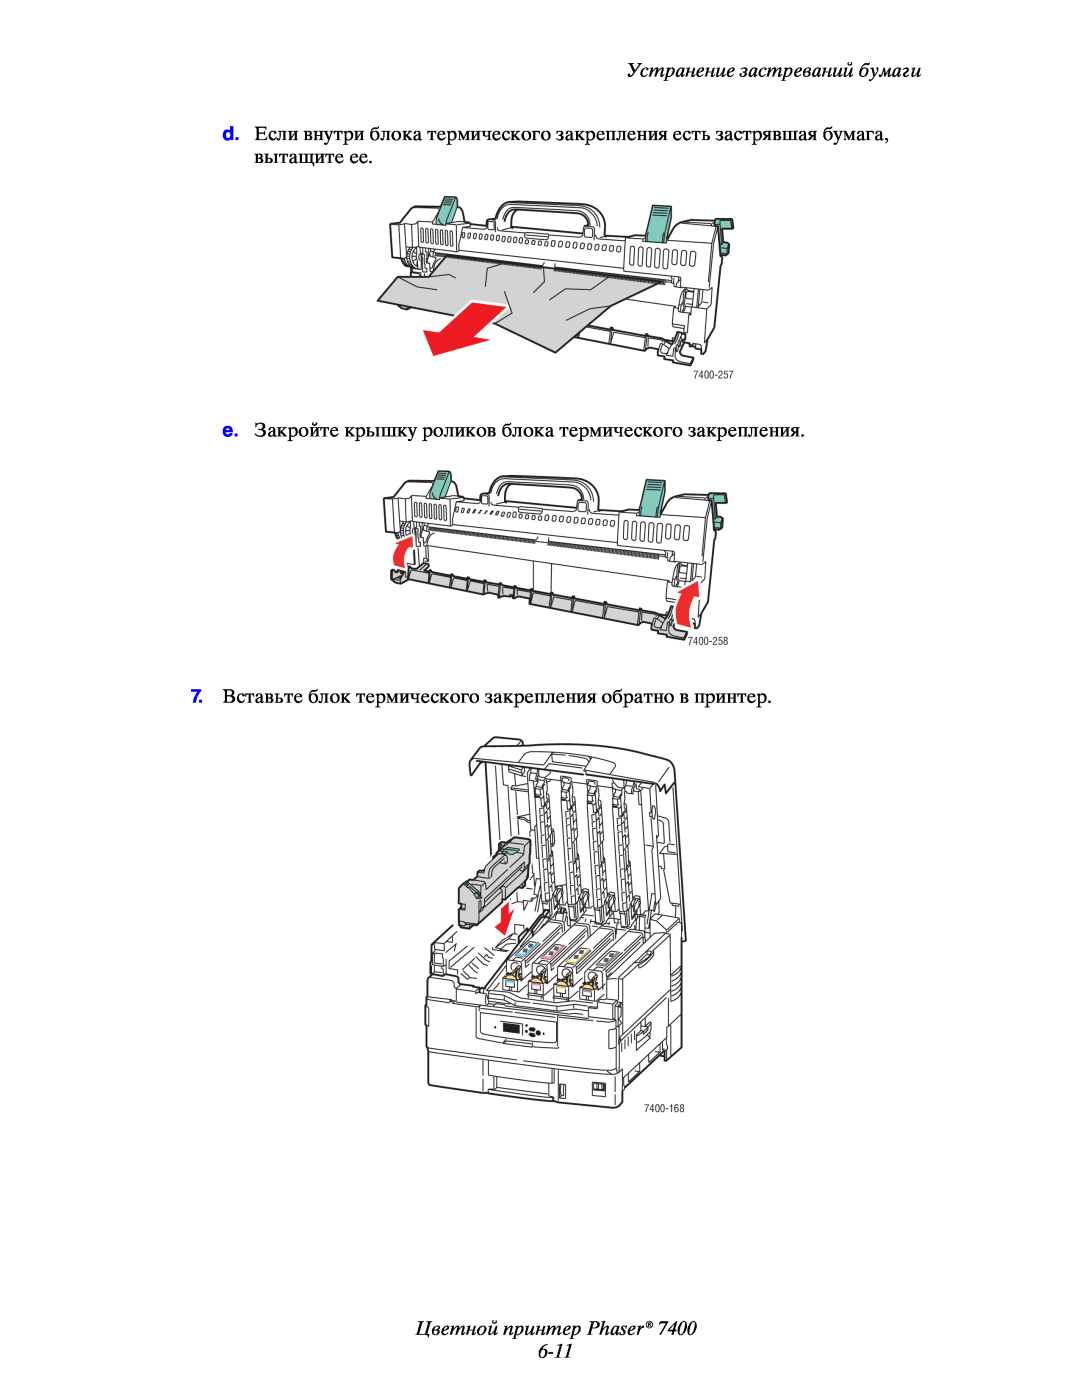 Xerox 7400 manual Цветной принтер Phaser 6-11, Устранение застреваний бумаги 